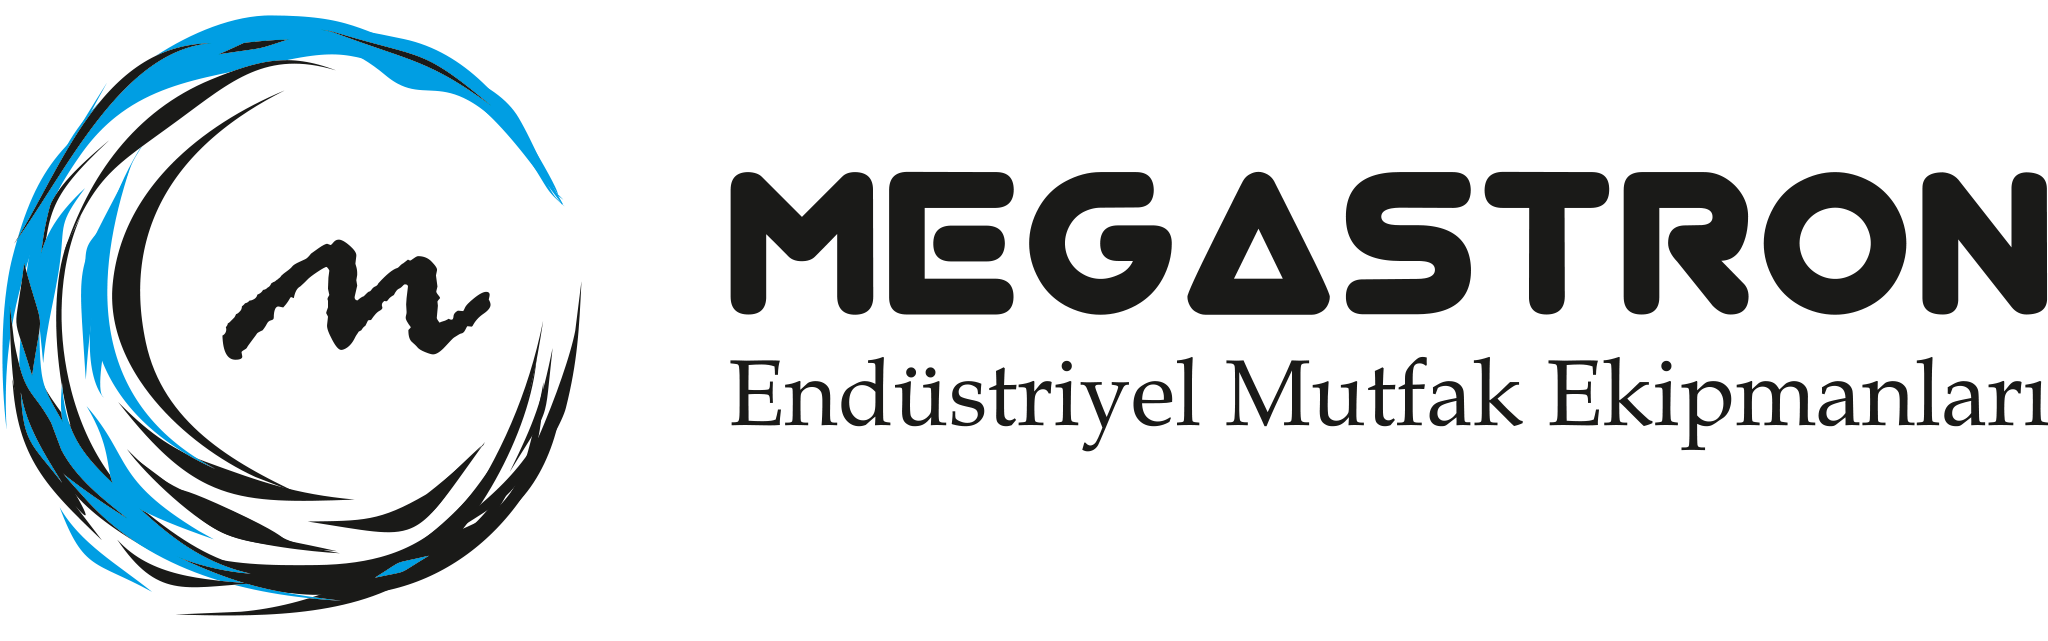 Megastron - Endüstriyel Mutfak Ekipmanları